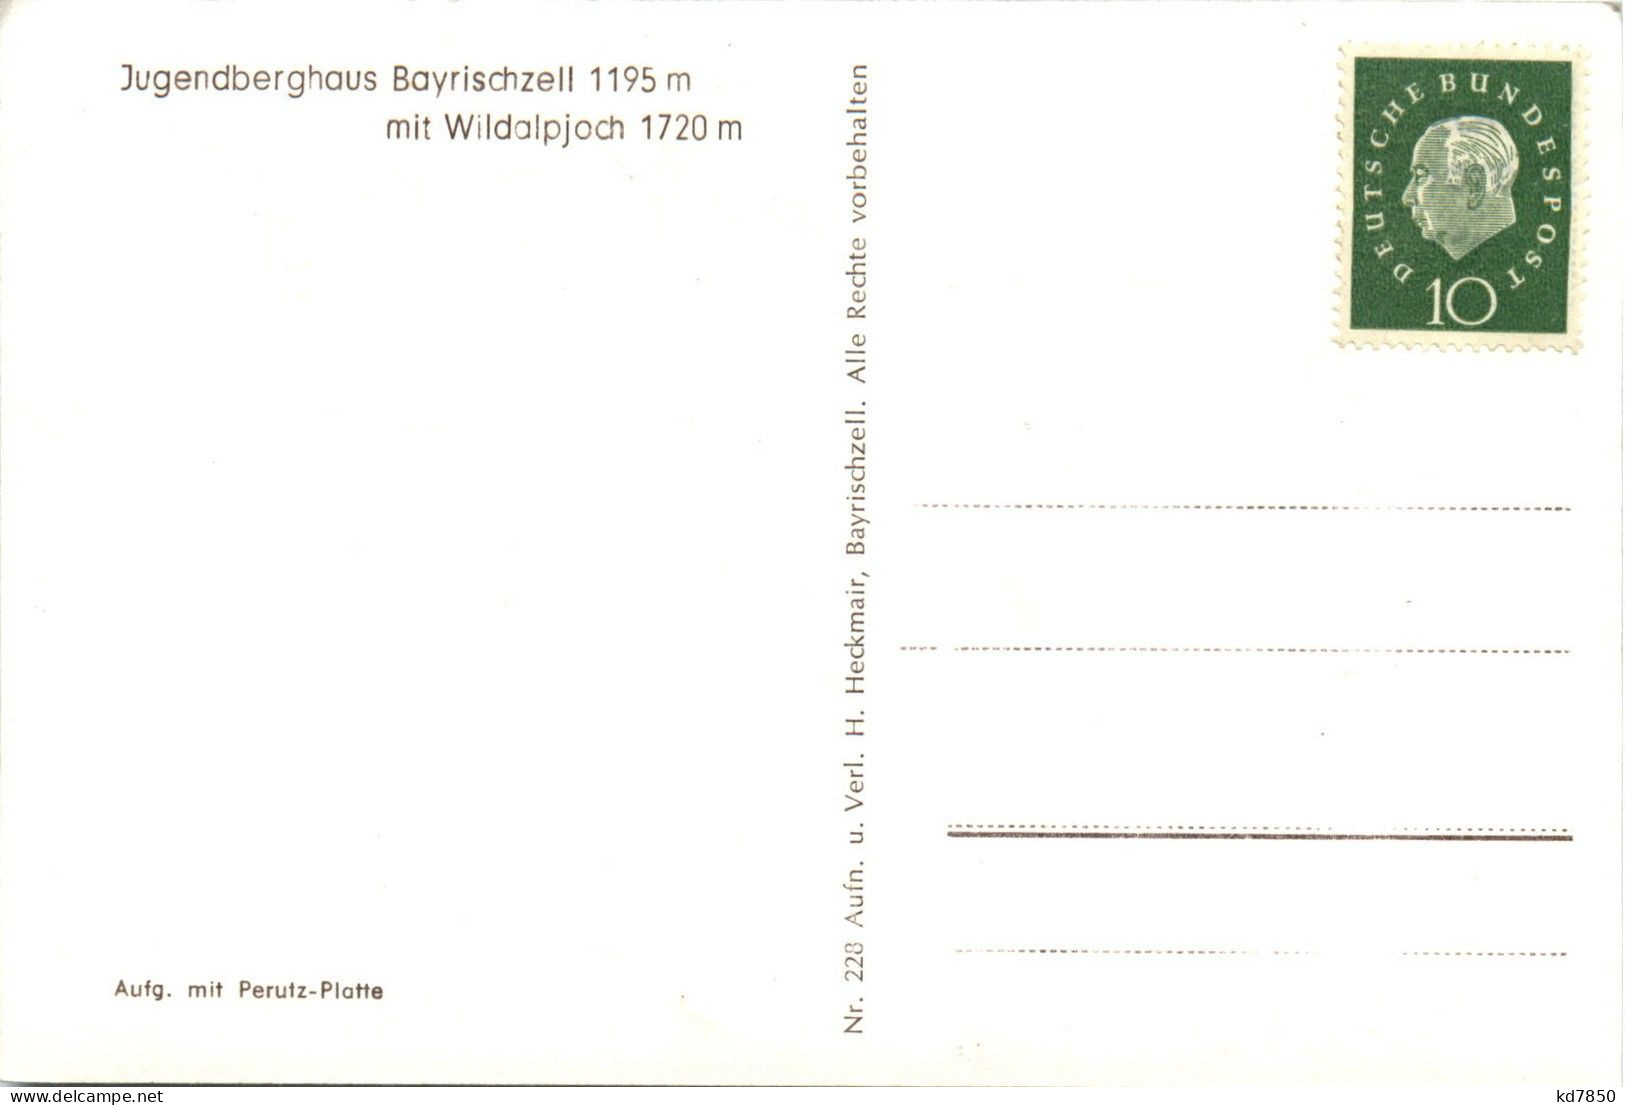 Jugendberghaus Bayrischzell - Miesbach